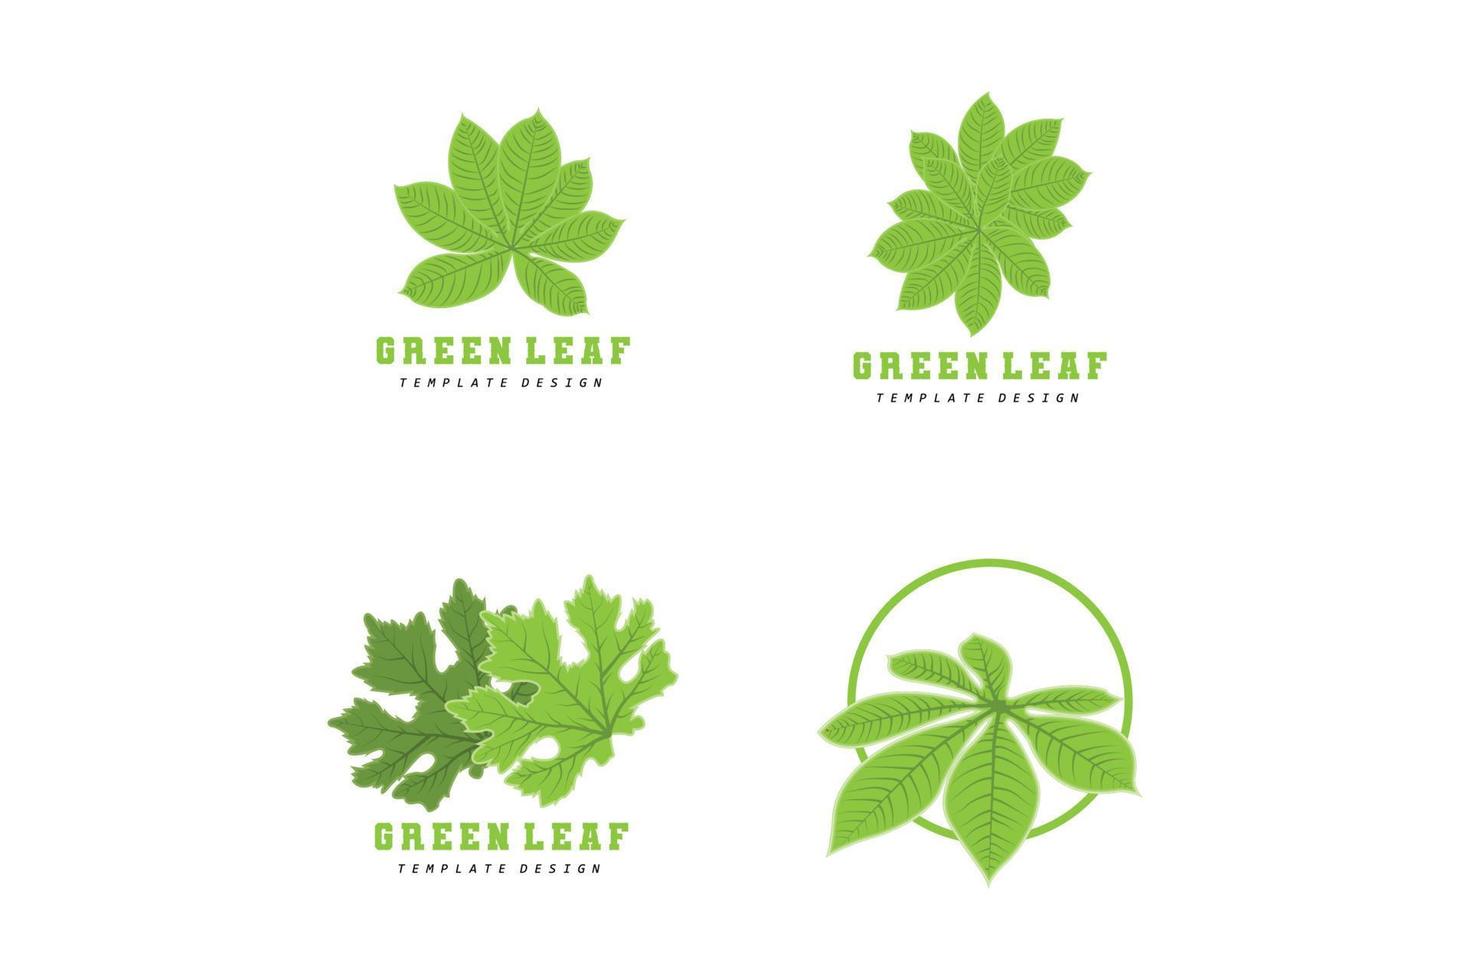 Leaf Lines logo design, Background Icons Artwork Artwork Colors pAstel vector